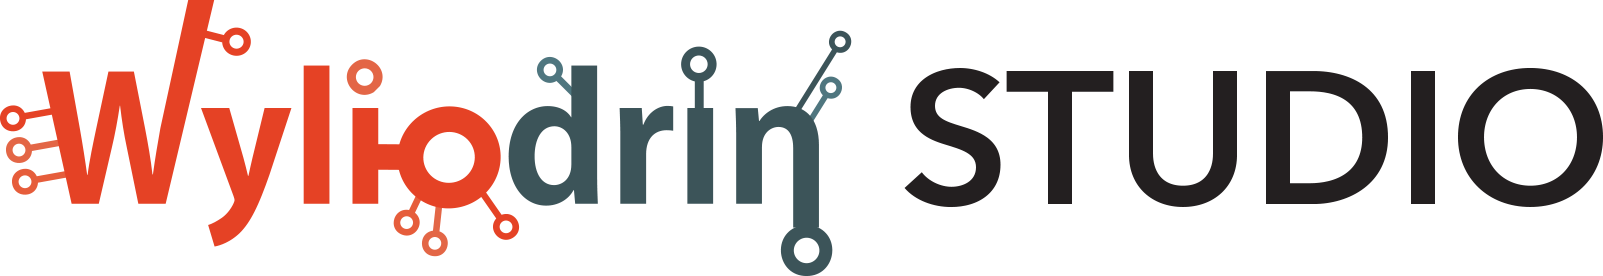 iot2016:wyliodrin-studio-logo.png